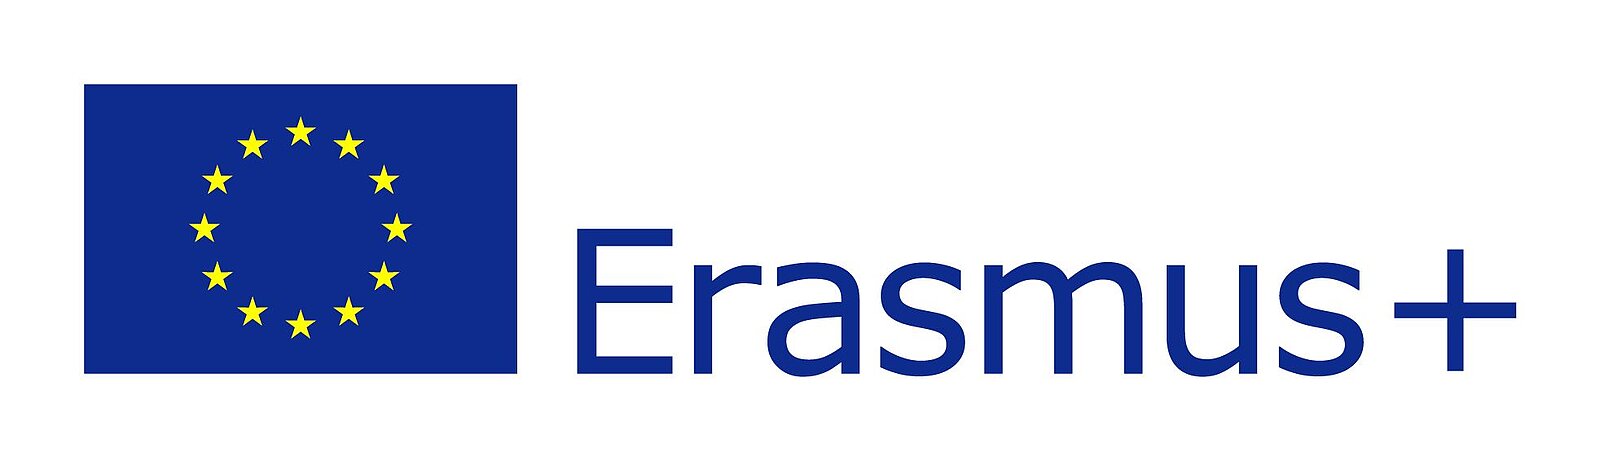 Erasmus mit EUF-lagge